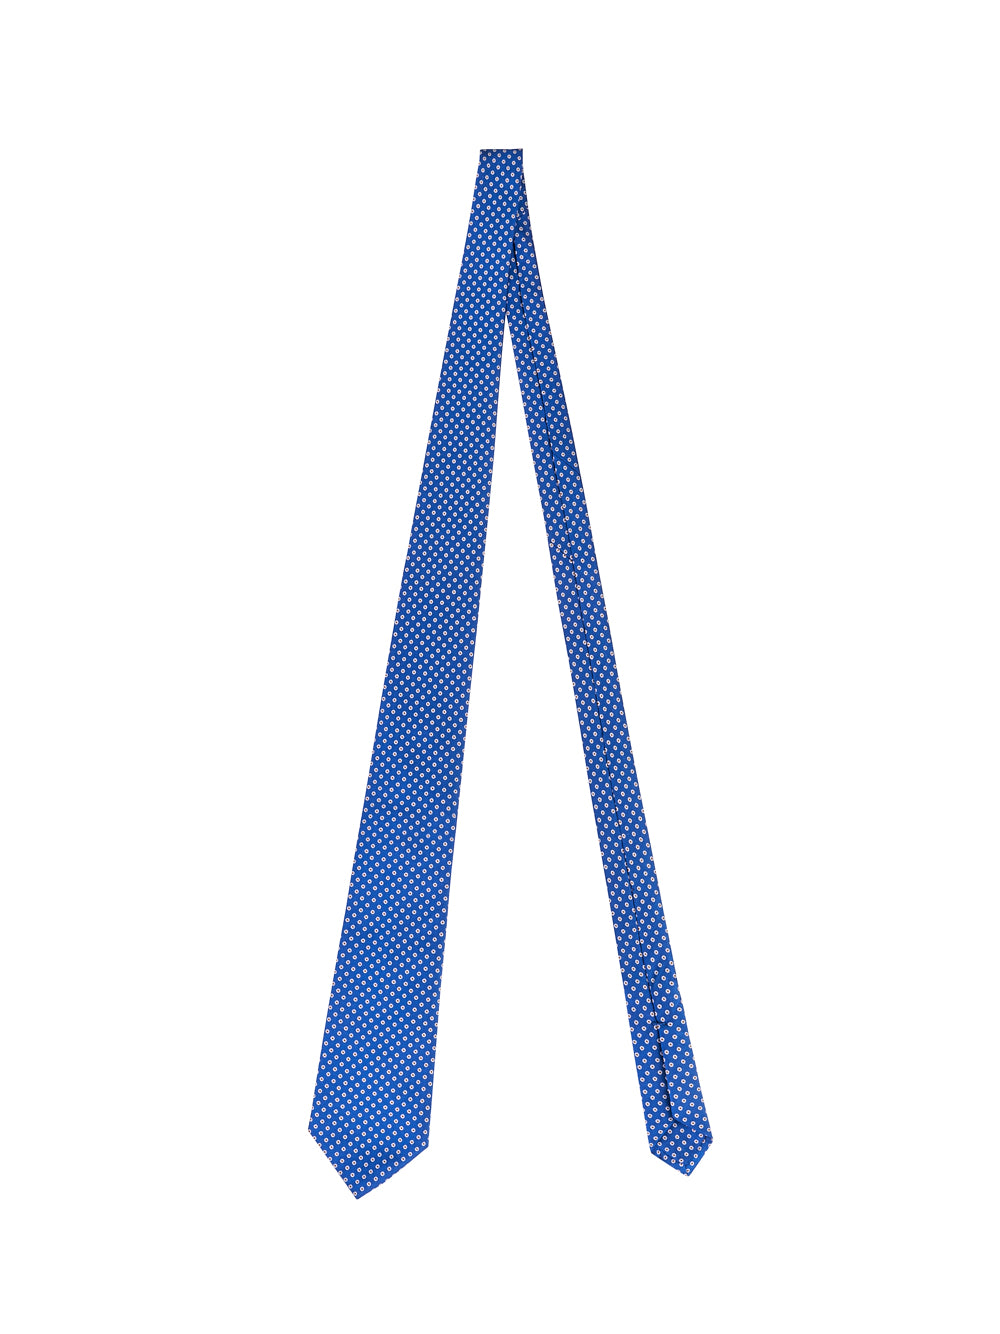 Cravatta PETRONIUS Pois
Azzurro